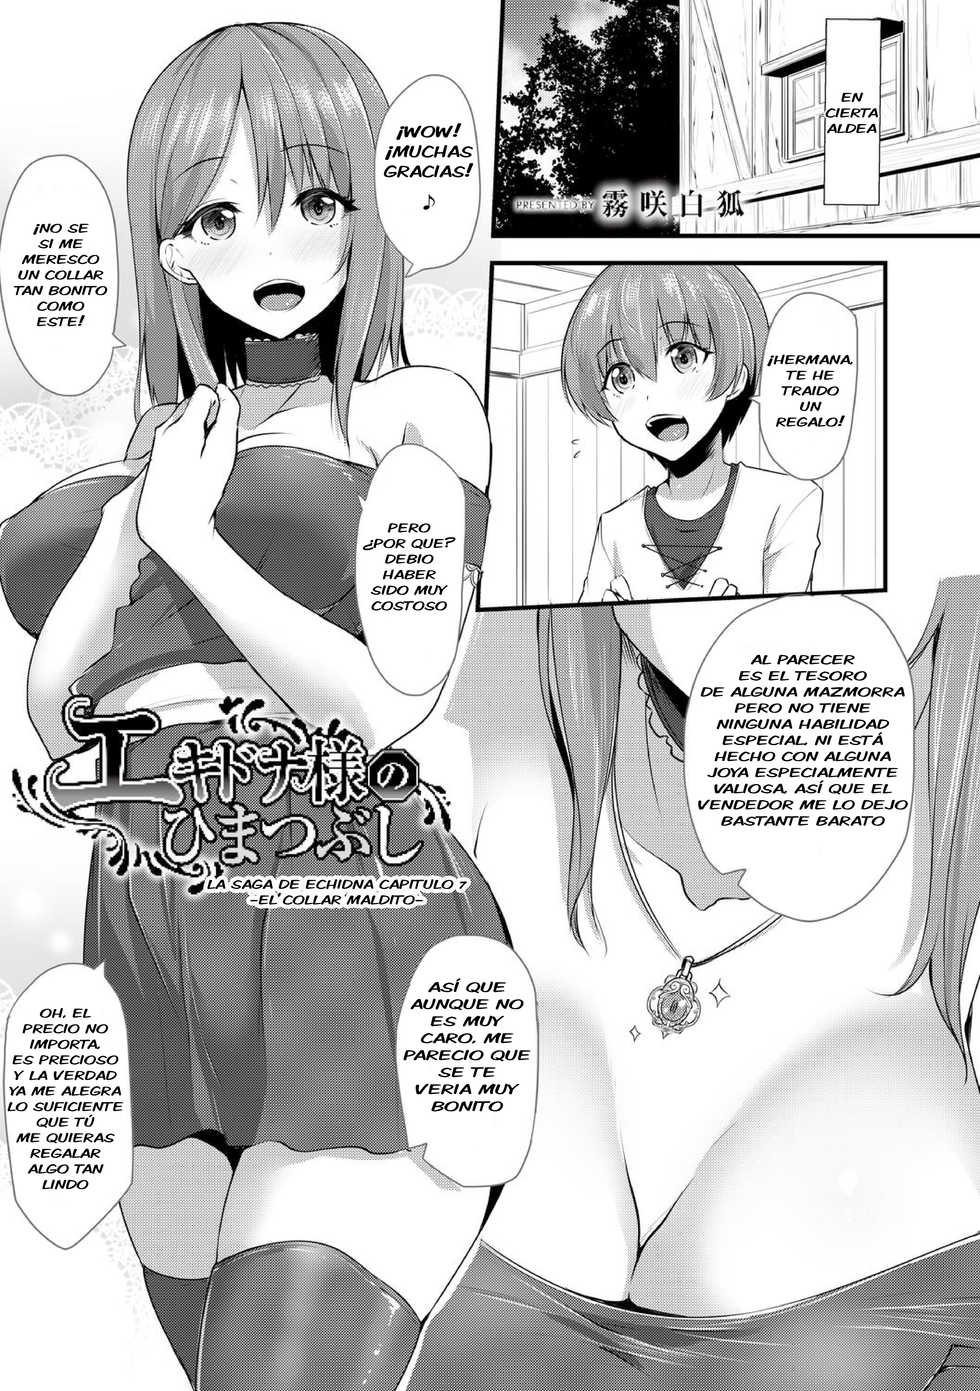 [Kirisaki Byakko] Saga de Echidna Capitulo 7 | Echidna-sama no Himatsubushi Dai Nana Soume [Spanish] [Cockamouse] - Page 3